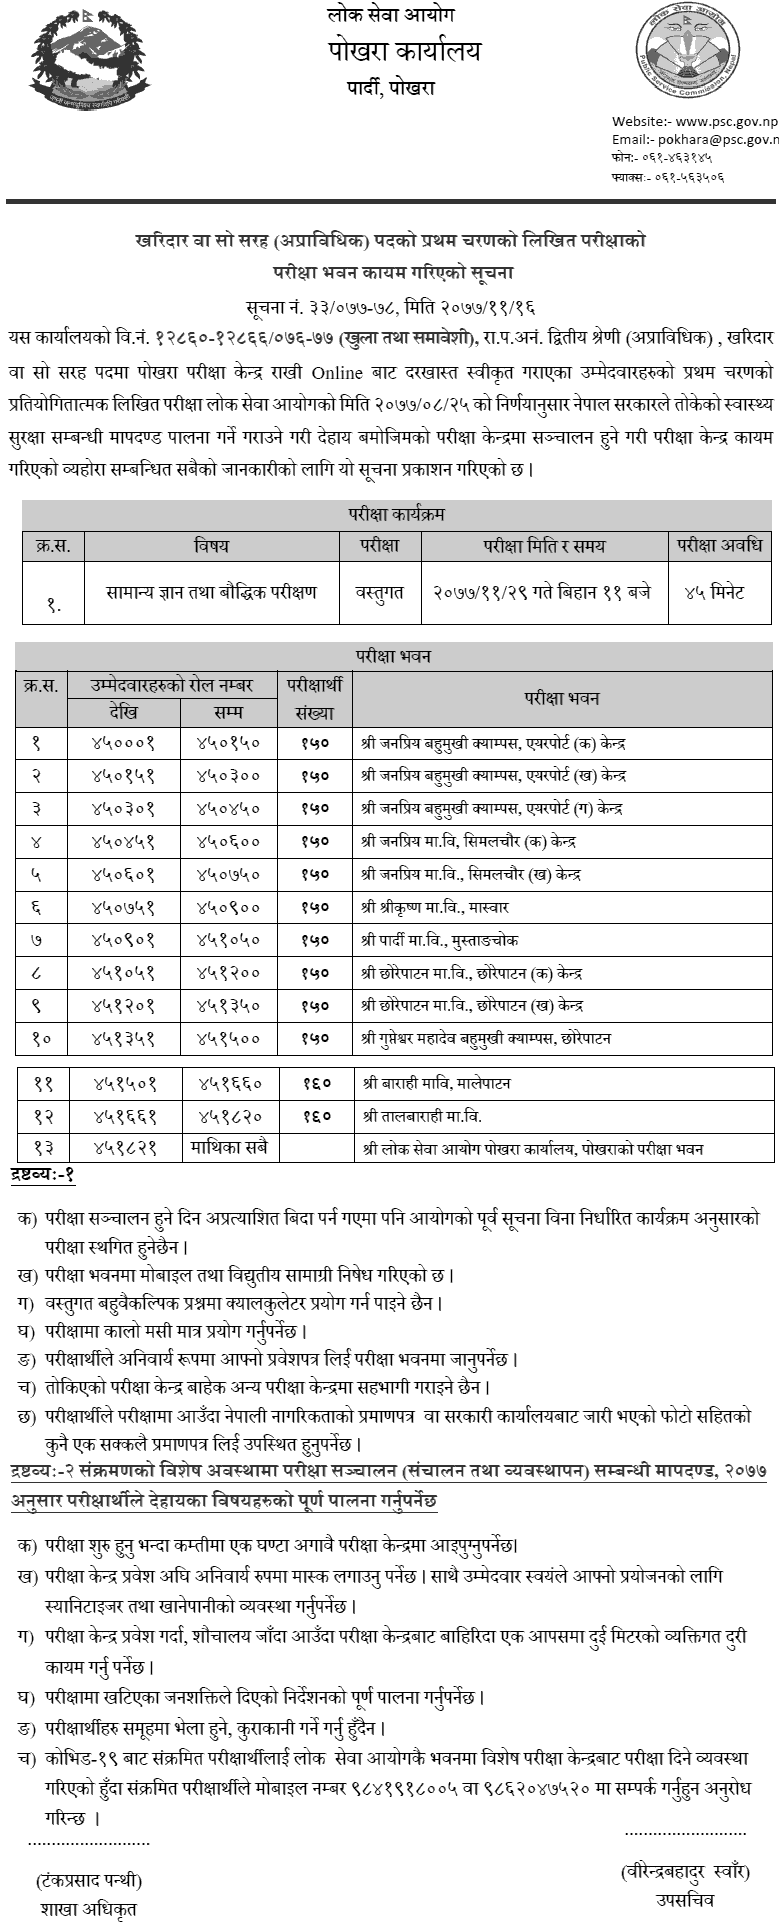 Kharidar 4th Level First Phase Exam Center Pokhara Lok Sewa Aayog